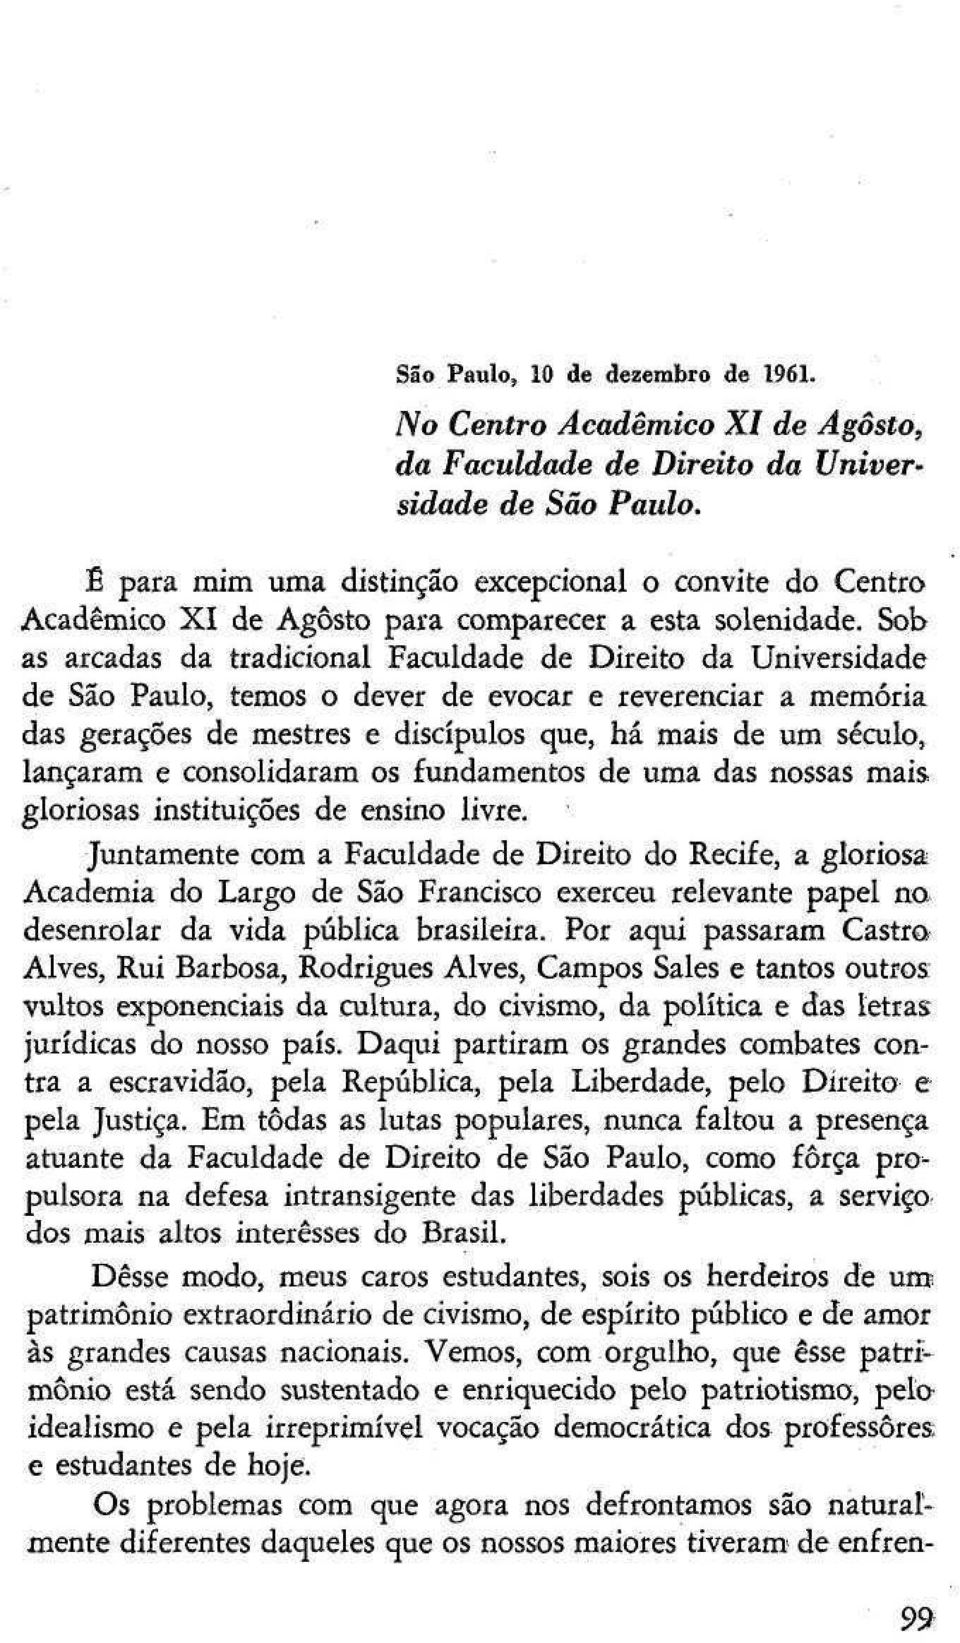 Sob as arcadas da tradicional Faculdade de Direito da Universidade de São Paulo, temos o dever de evocar e reverenciar a memória das gerações de mestres e discípulos que, há mais de um século,